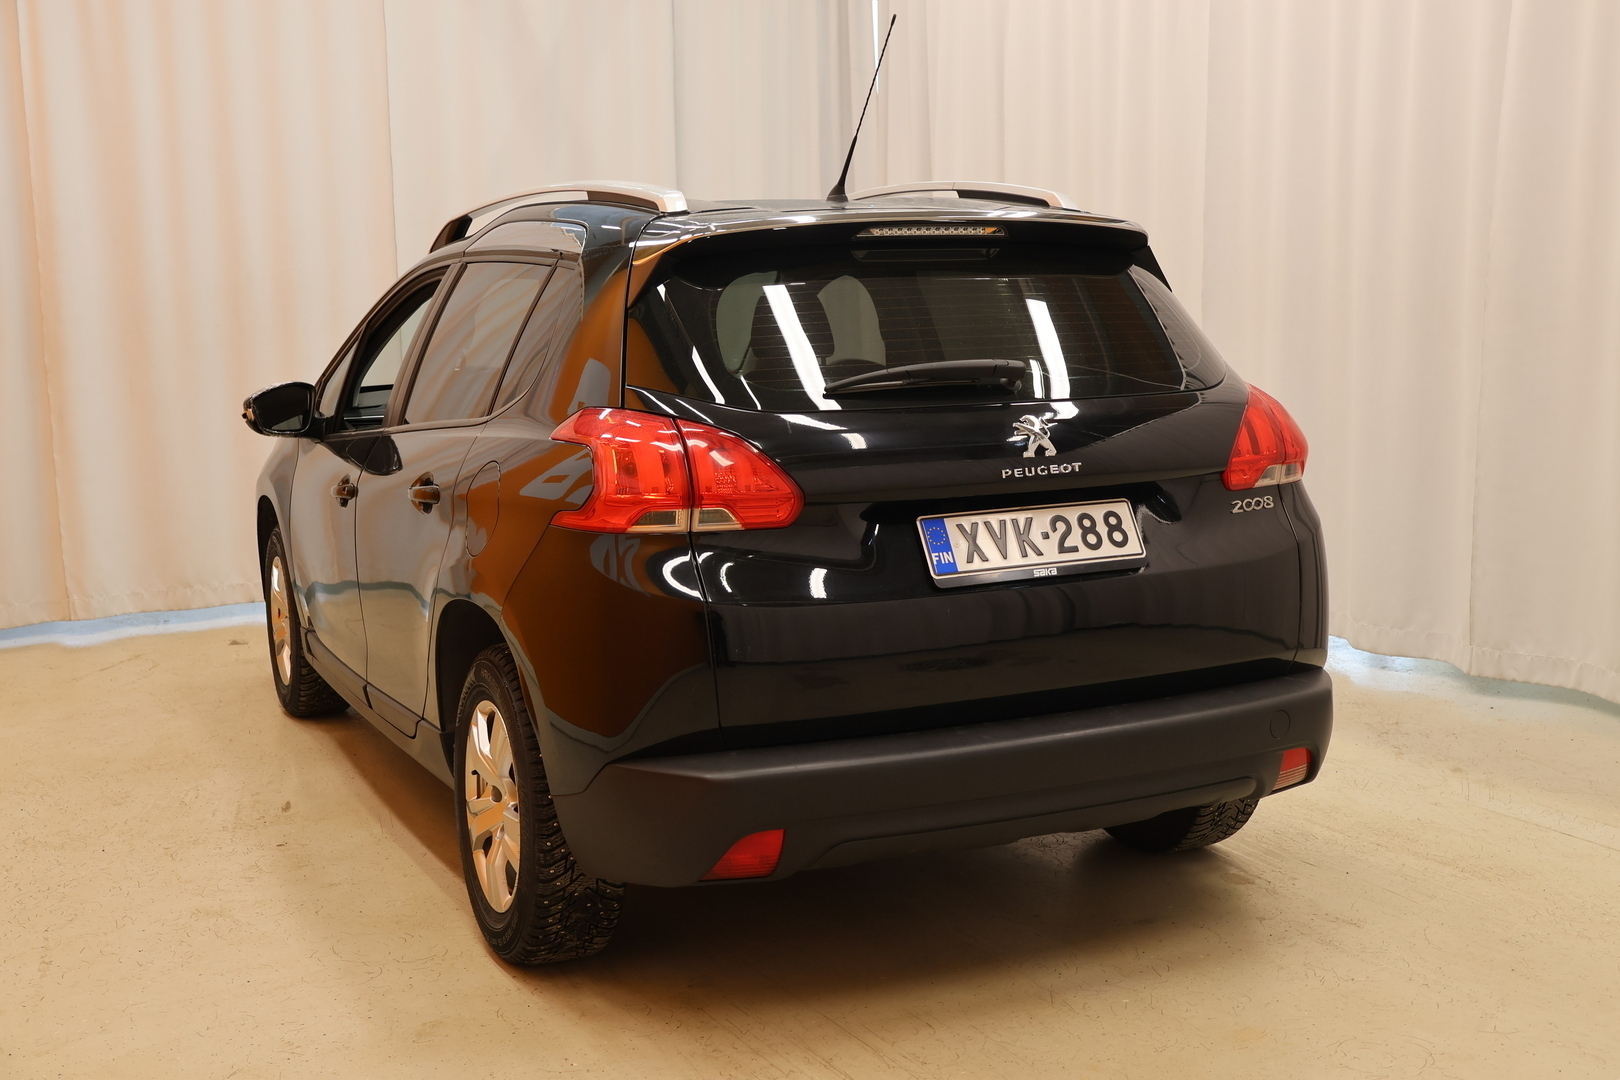 Musta Viistoperä, Peugeot 2008 – XVK-288